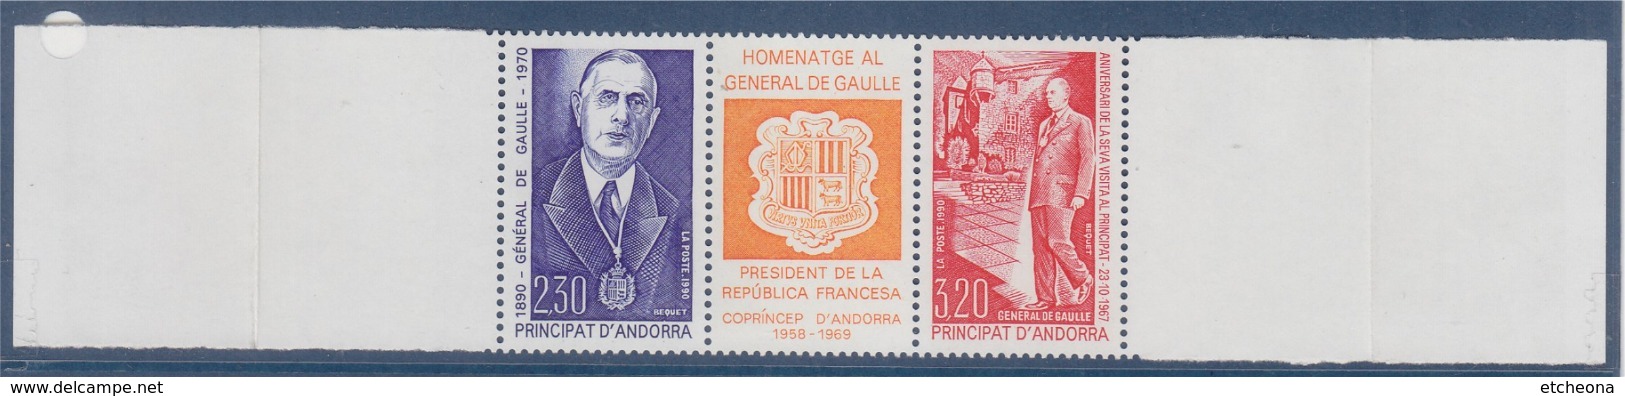 = Hommage Au Général De Gaulle 2 Timbres + Vignette Bande Horizontale Neuve Principauté D'Andorre - De Gaulle (General)